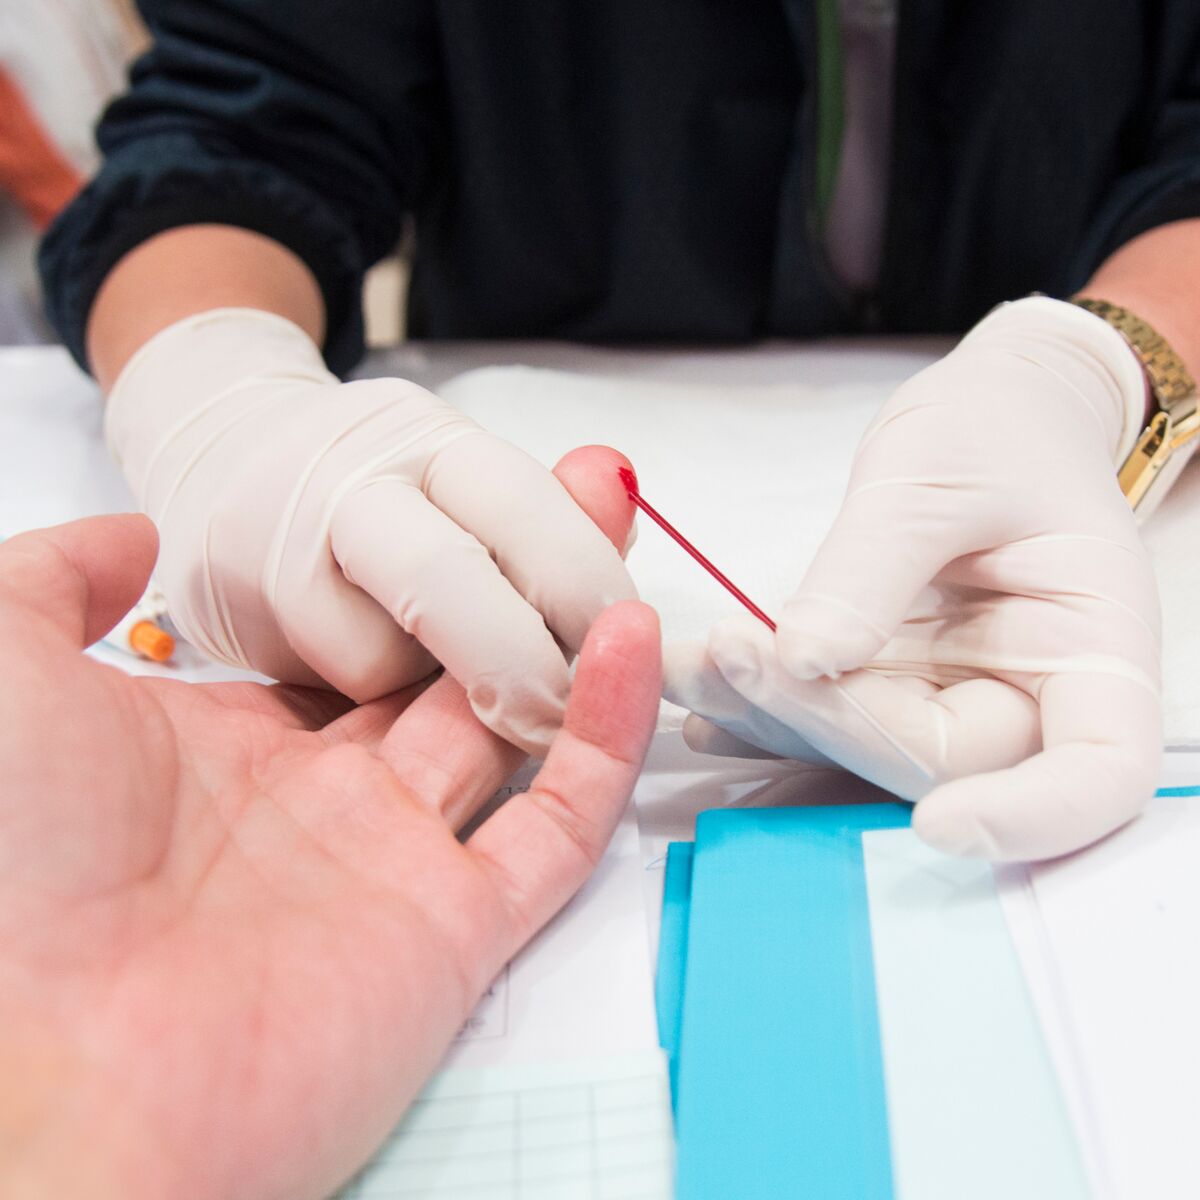 VIH/sida - autotest - dépistage